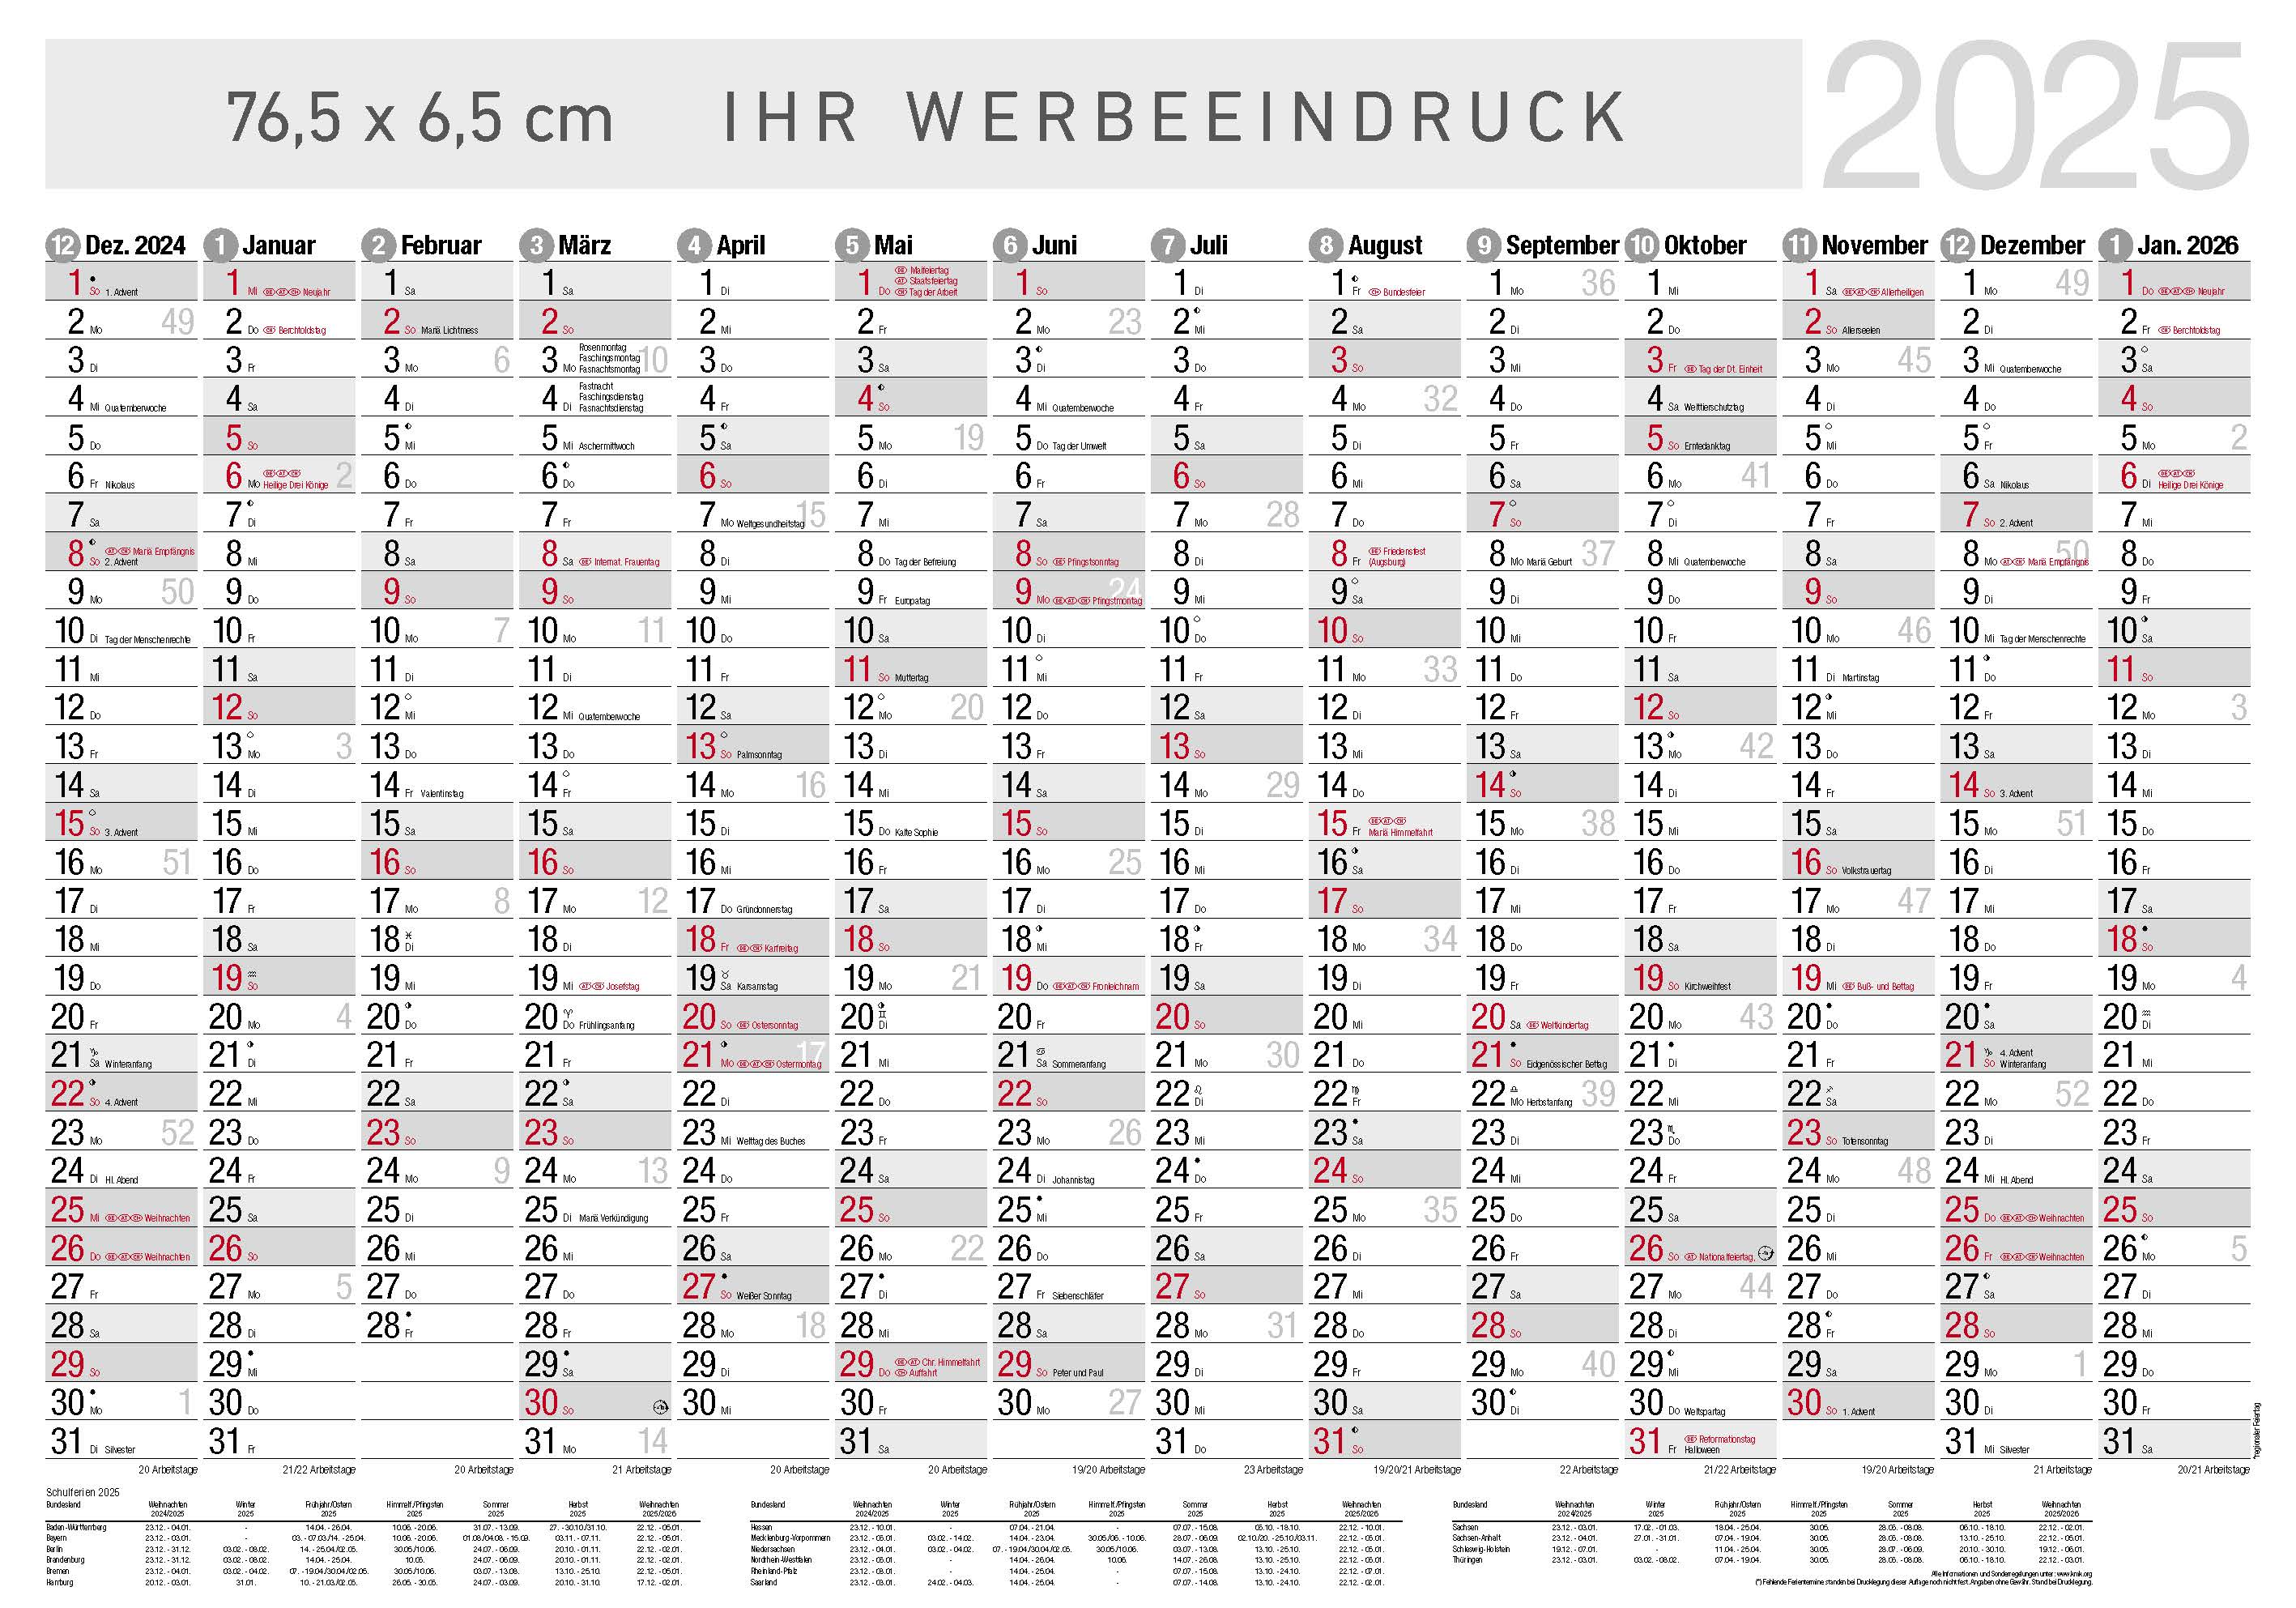 Jahresplaner Bodensee XL
14 Monate schwarz/rot
Deutsch - 3-sprachig DE-AT-CH